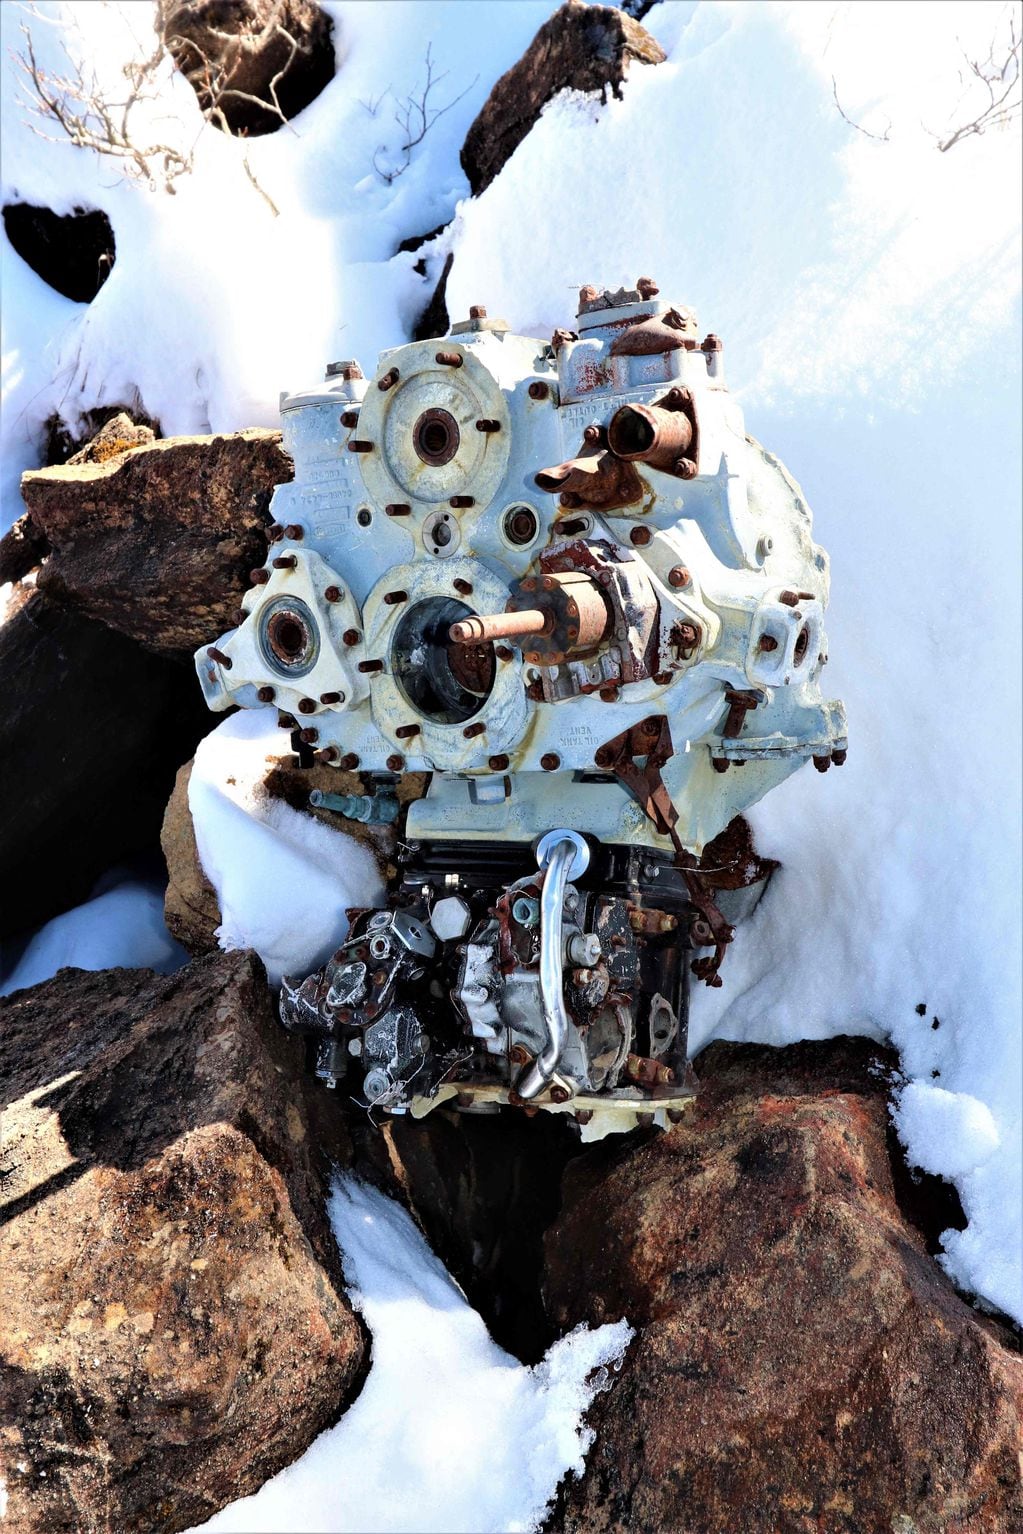 Los restos del avión C-46 de la Segunda Guerra Mundial en la ladera de una montaña del Himalaya, cubierta de nieve.